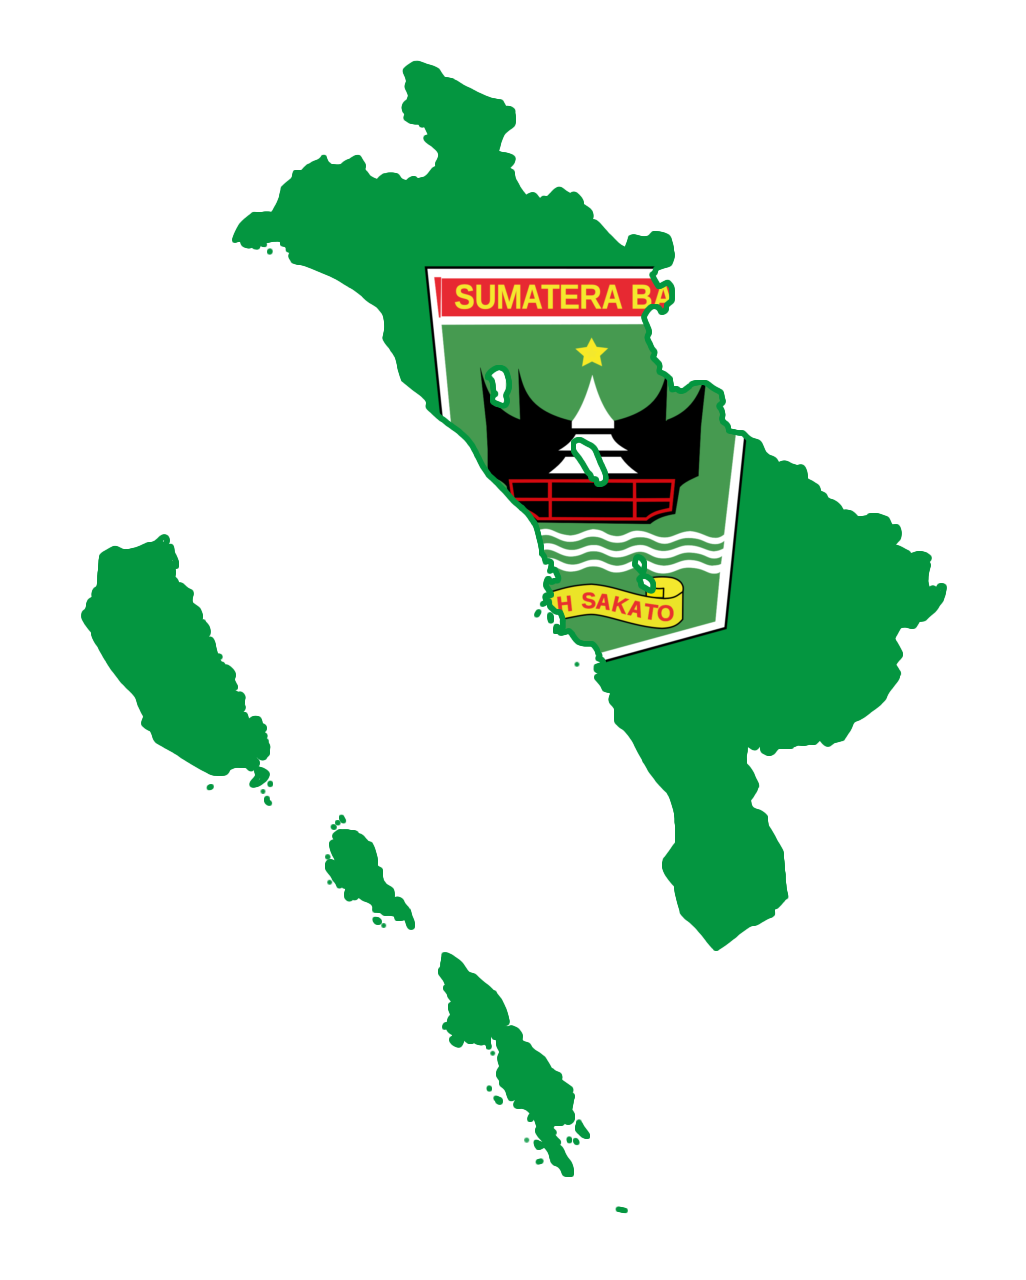 Sumatra Mandheling